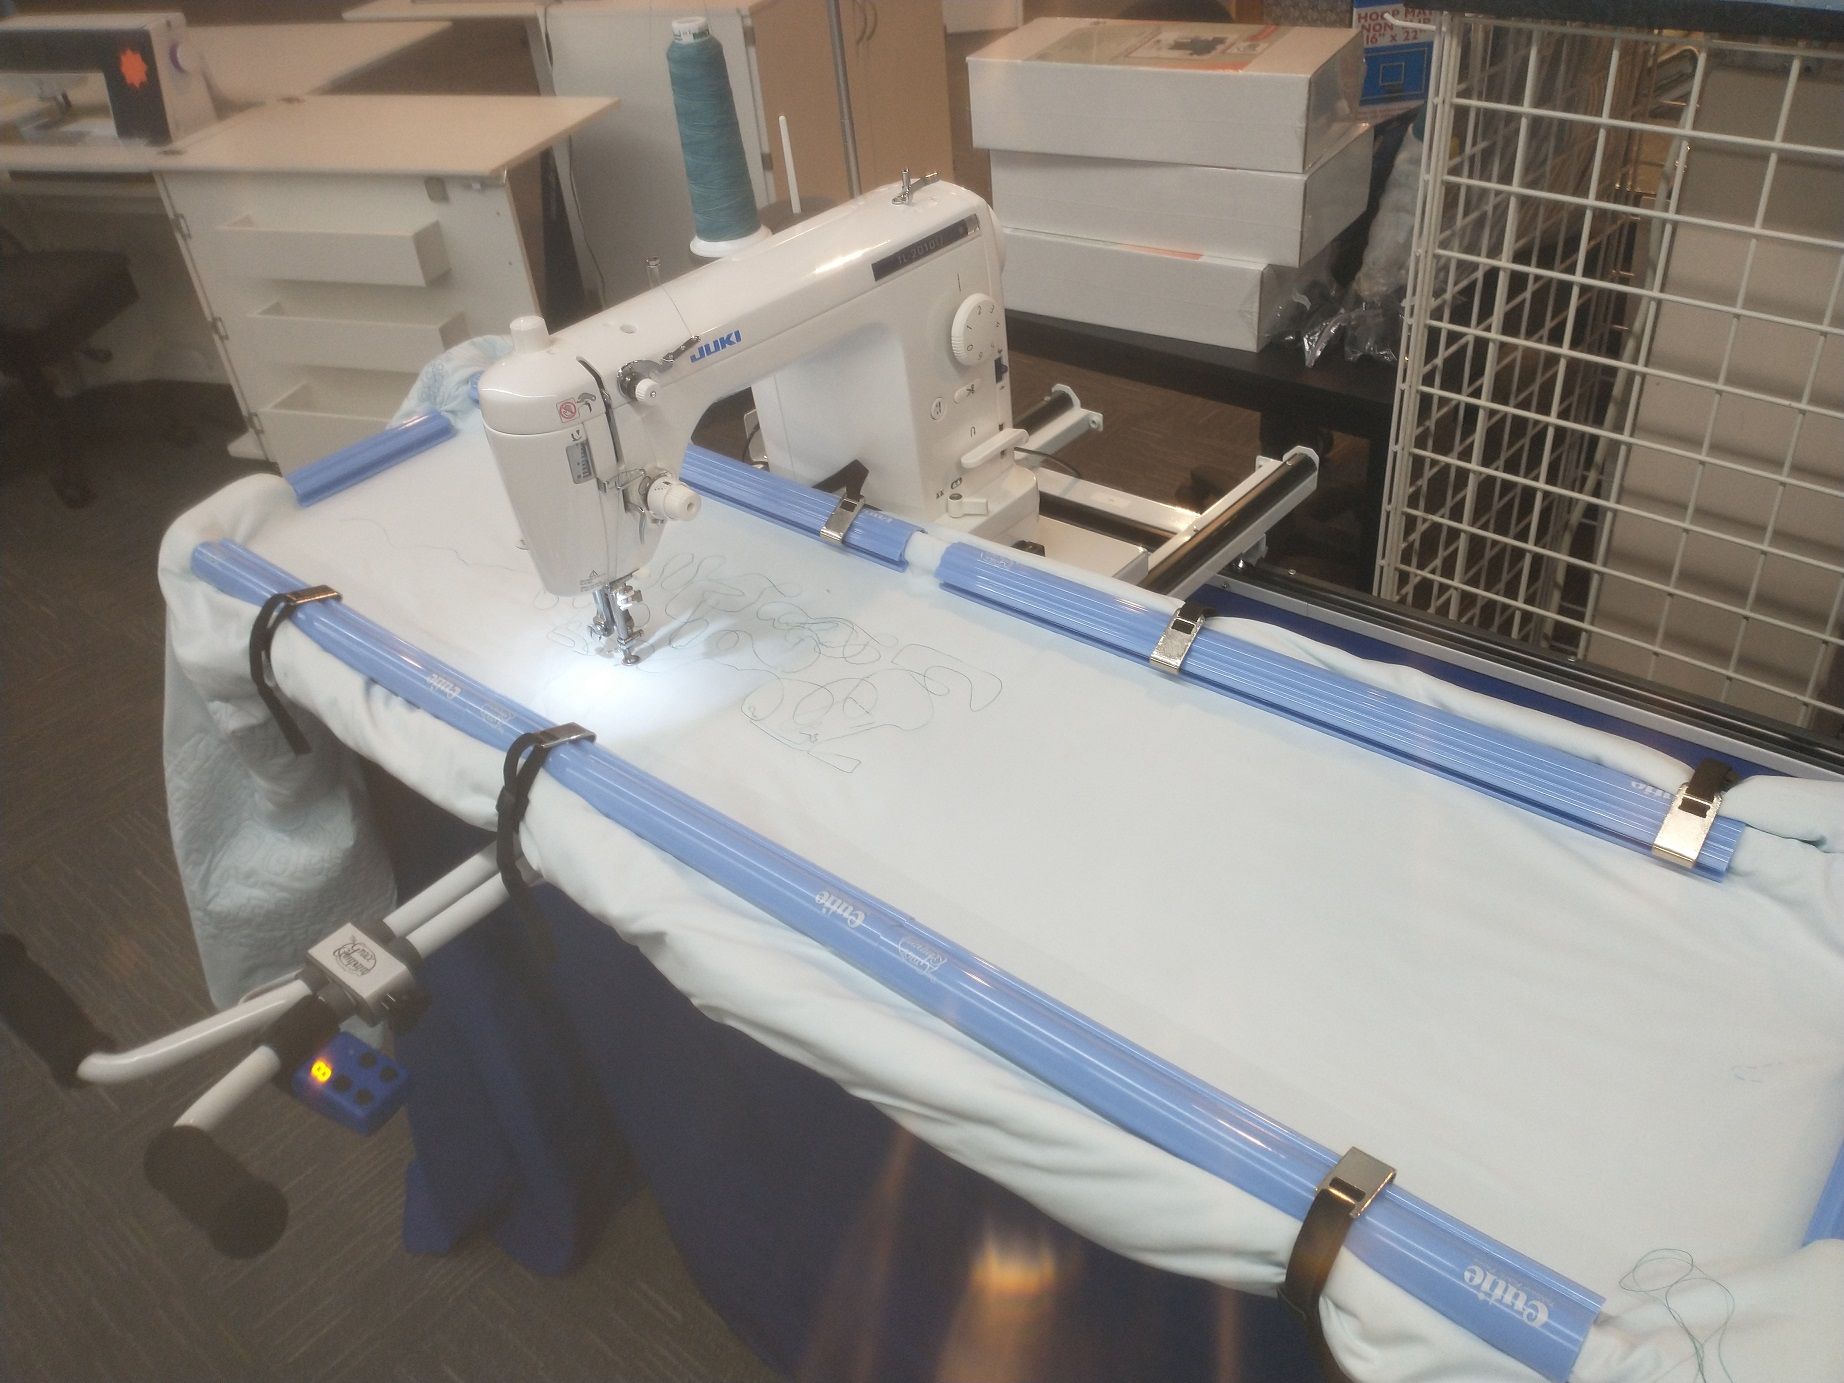 Juki TL-2010Q Sewing Machine - Sew Much Moore